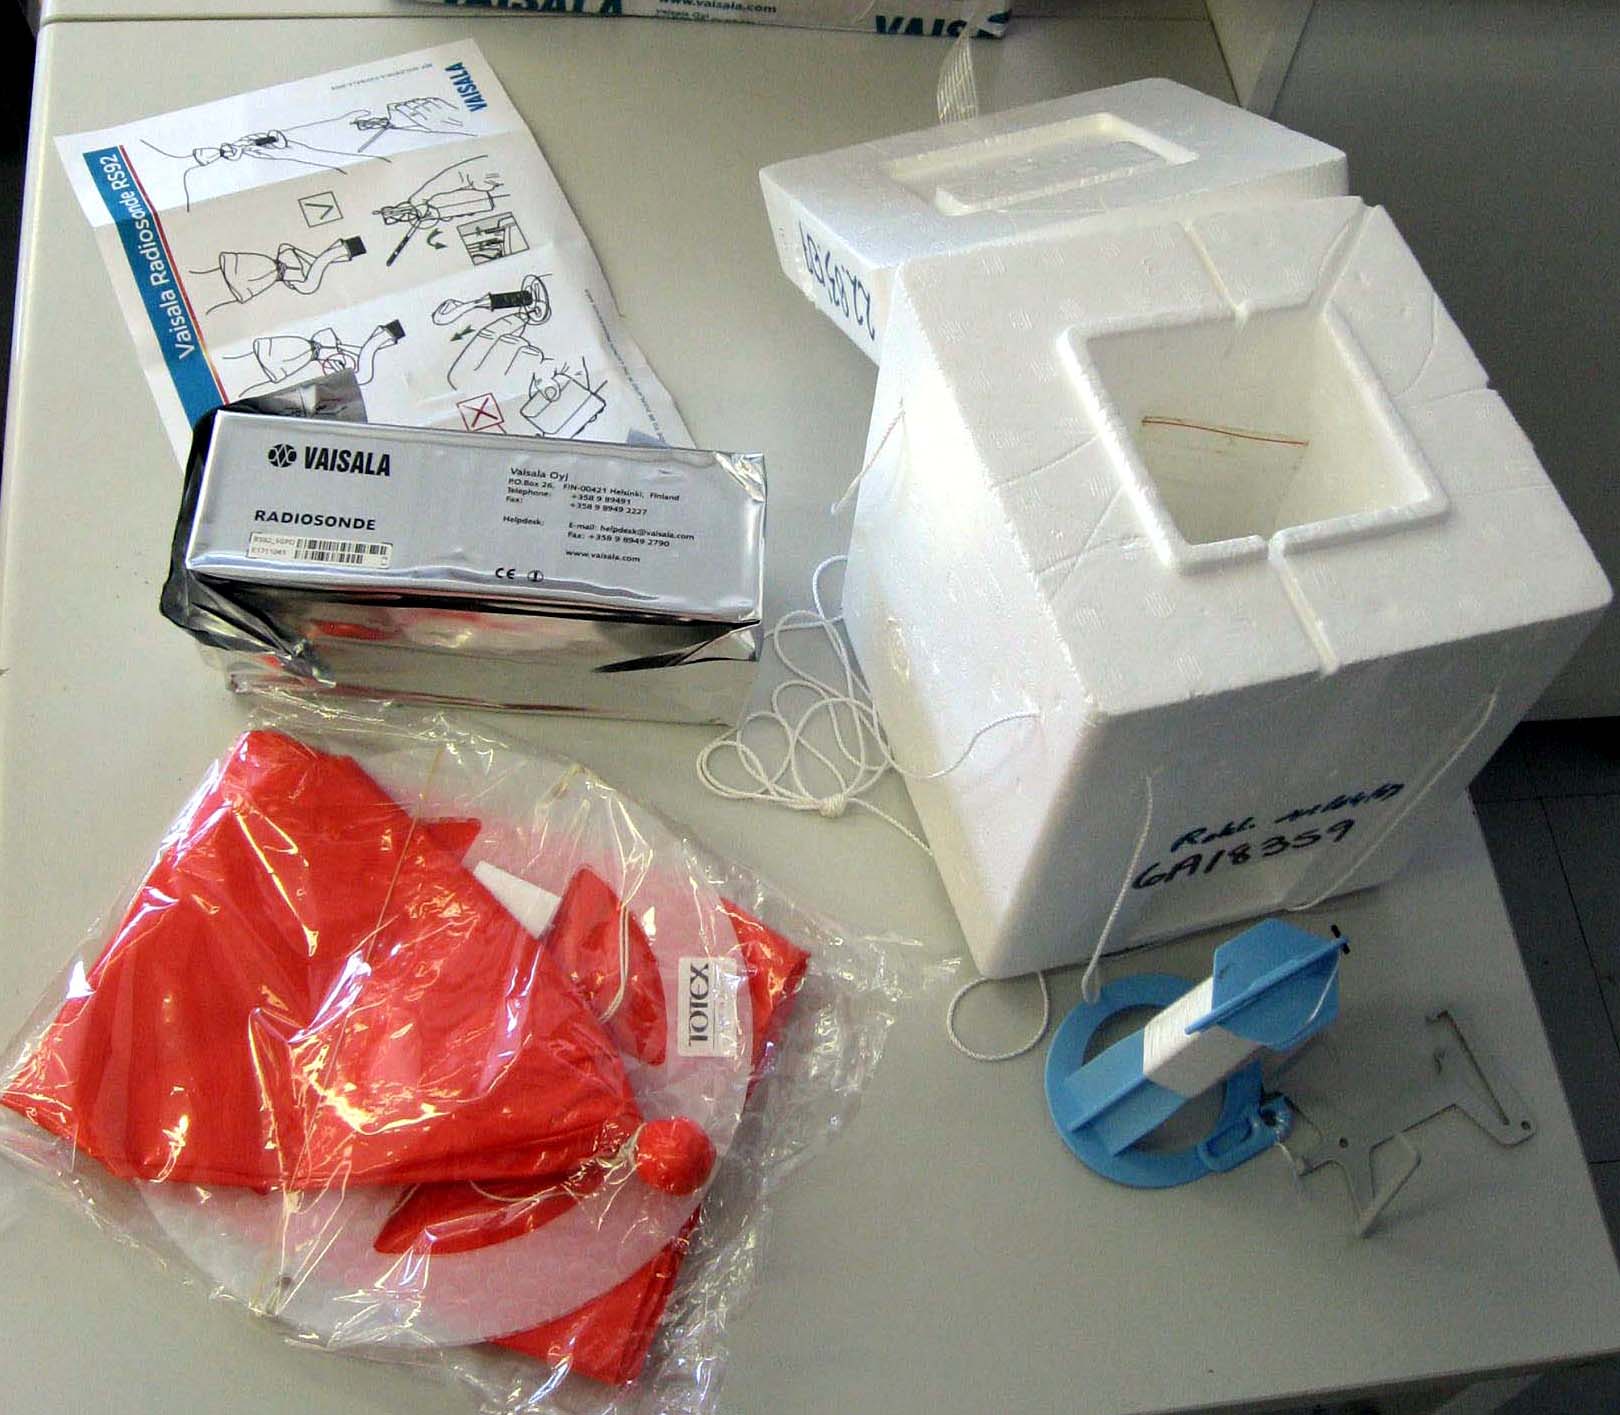 112-0747 Lyseon pallon varusteet paketista avattuina.JPG